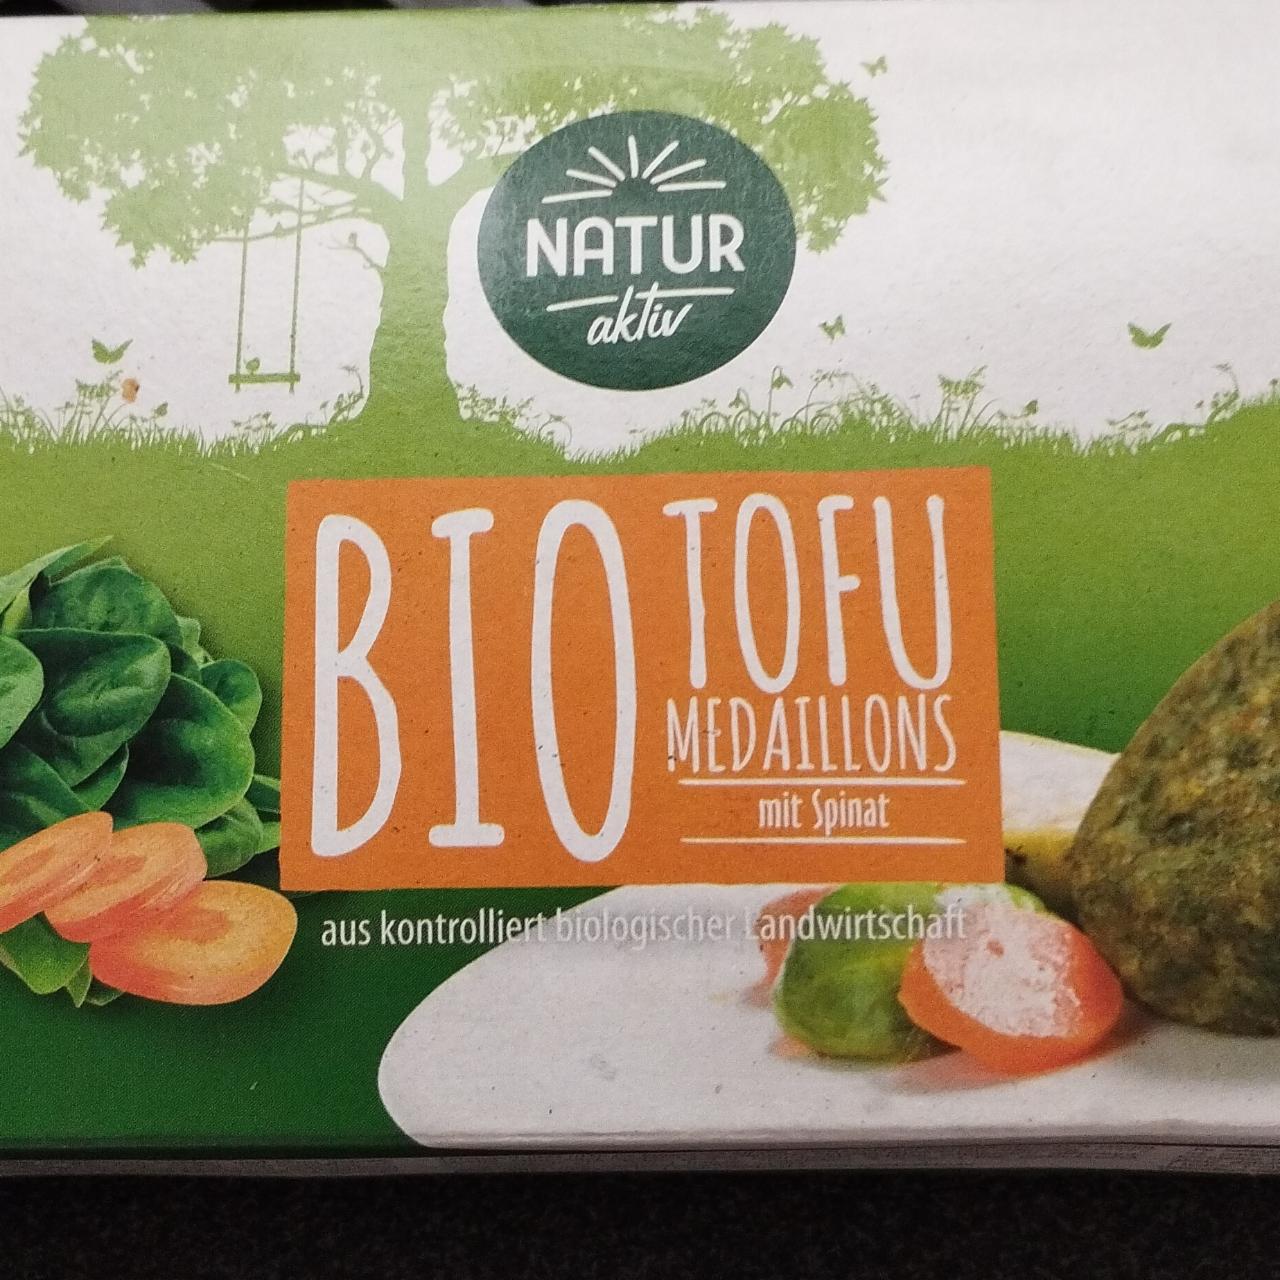 Képek - Bio tofu medaillons mit spinat Natur aktiv